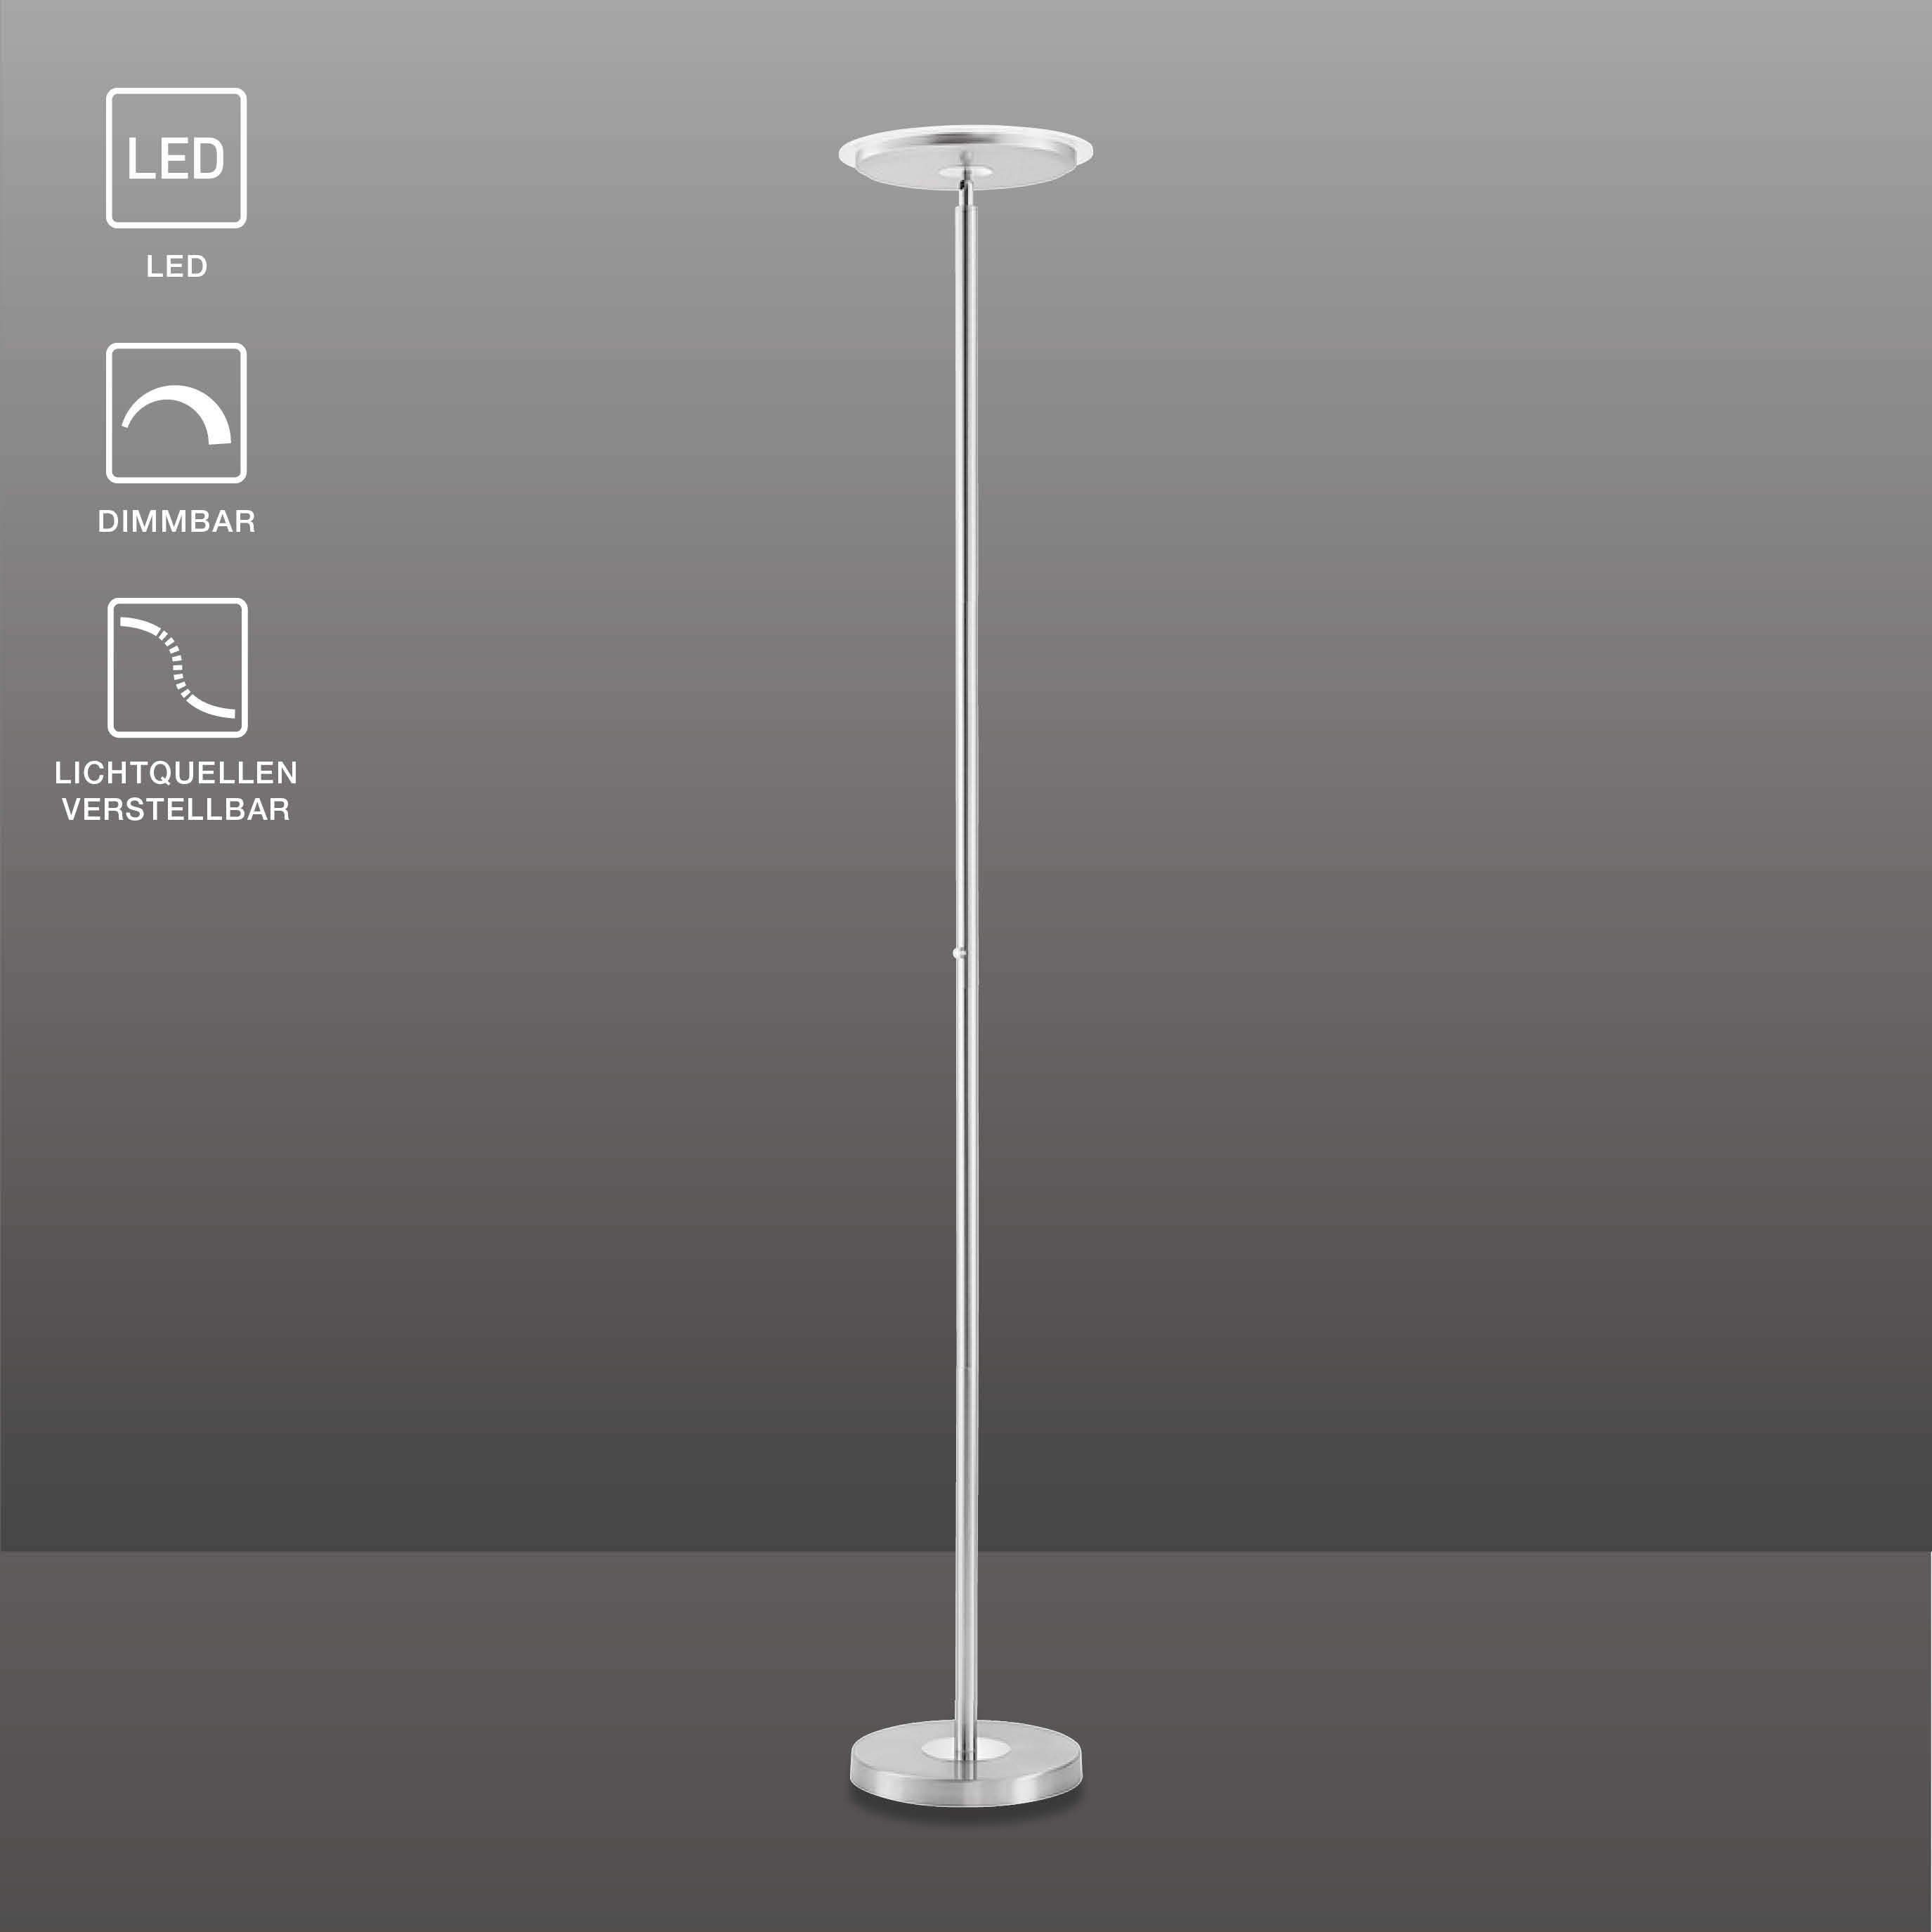 SellTec Stehlampe »Stehlampe HANS rund«, Edelstahl, dimmbar per Touchdimmer  online kaufen | OTTO